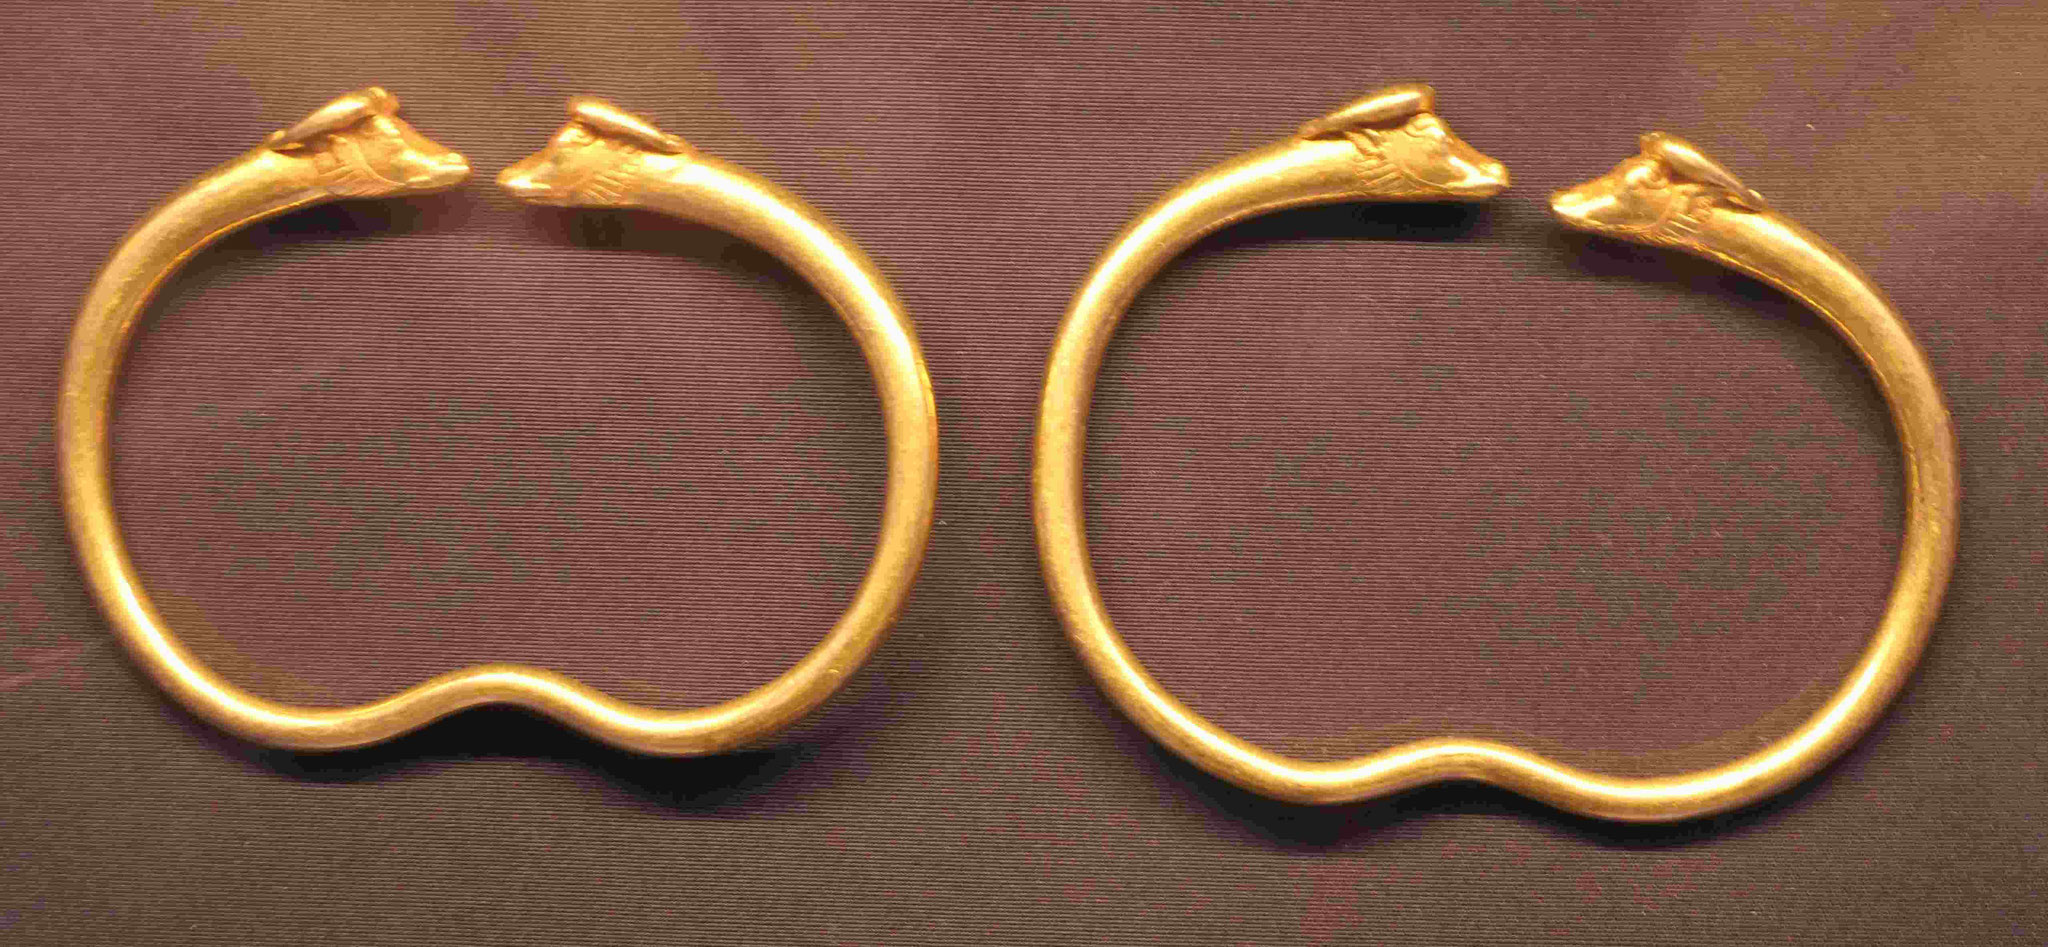 Ohrringe und Armschmuck, Gold gegossen und ziseliert, 5.-4. Jhdt. v.u.Z.., Staatliche Museen Berlin